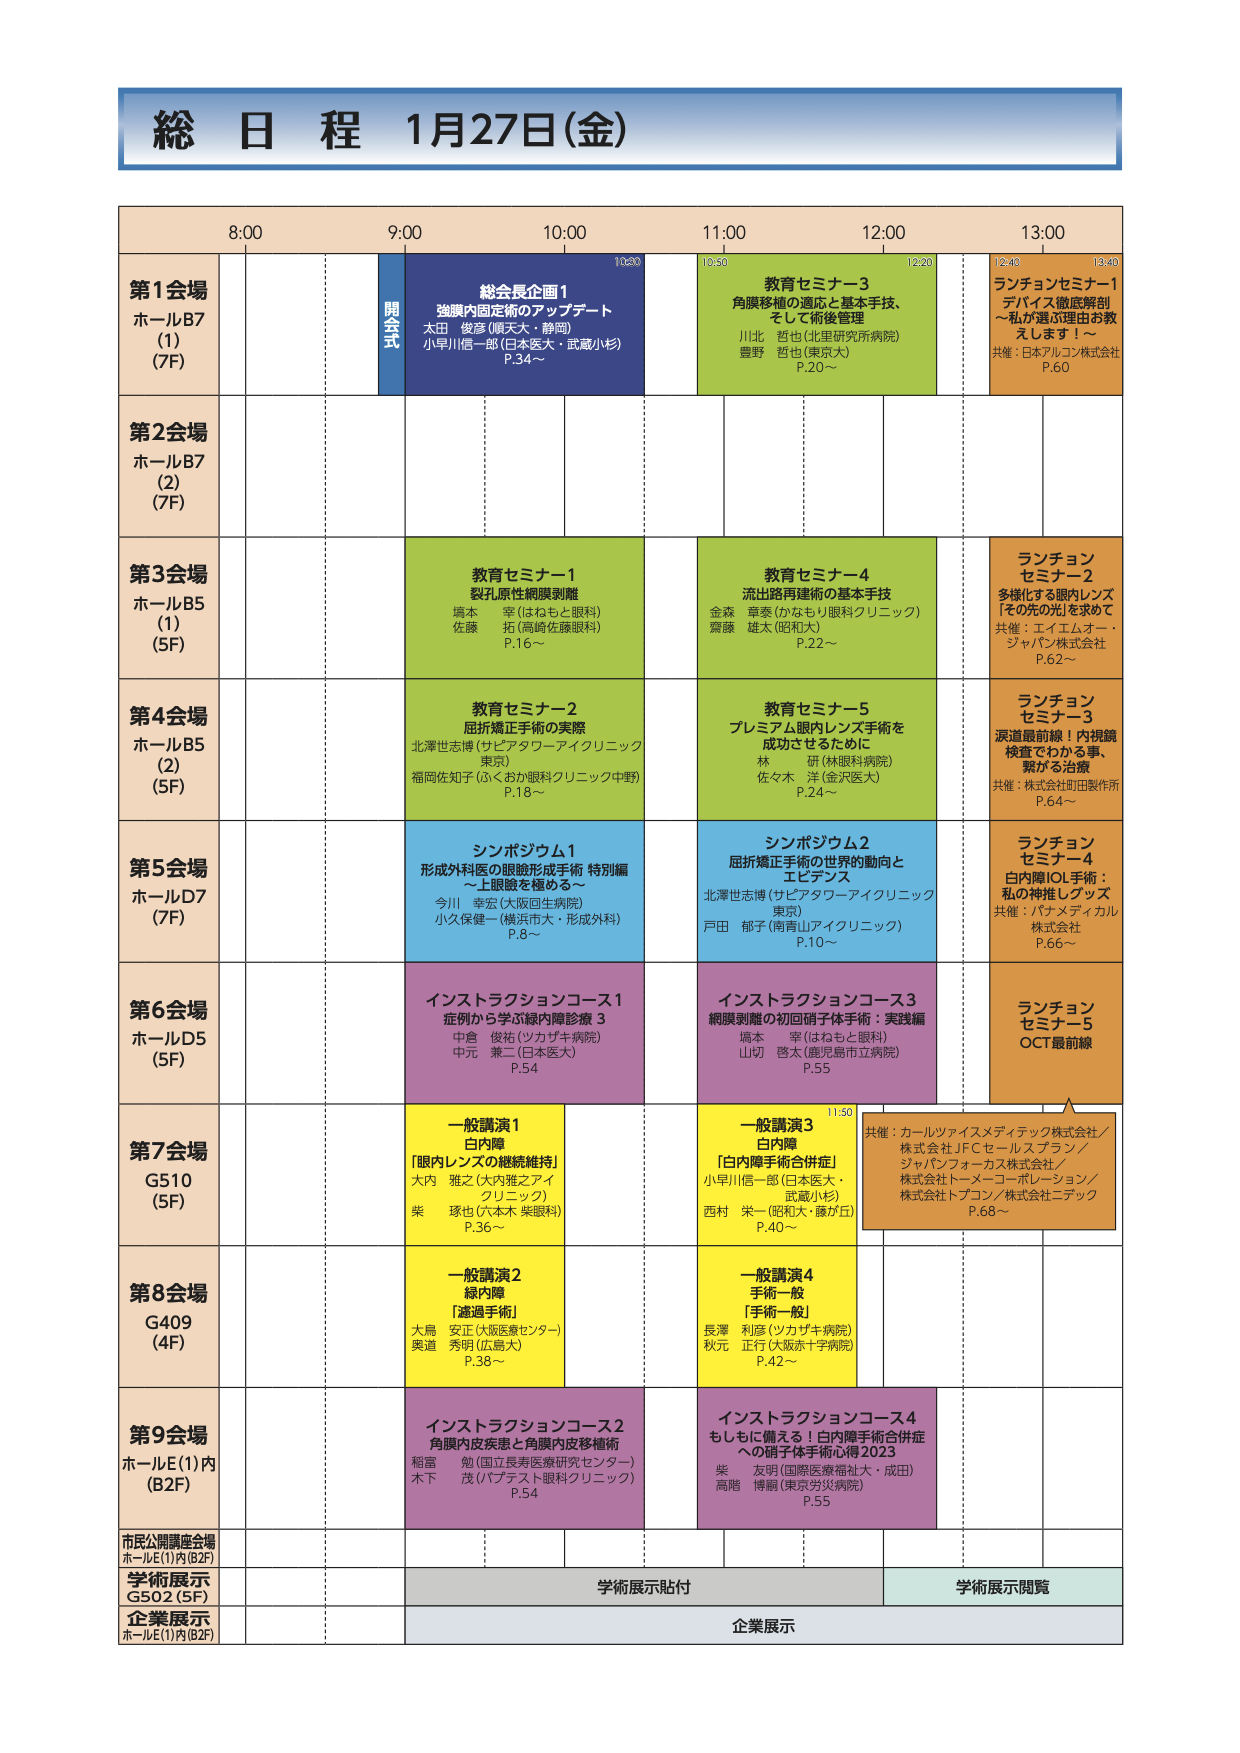 jsos46-schedule-1-1.png